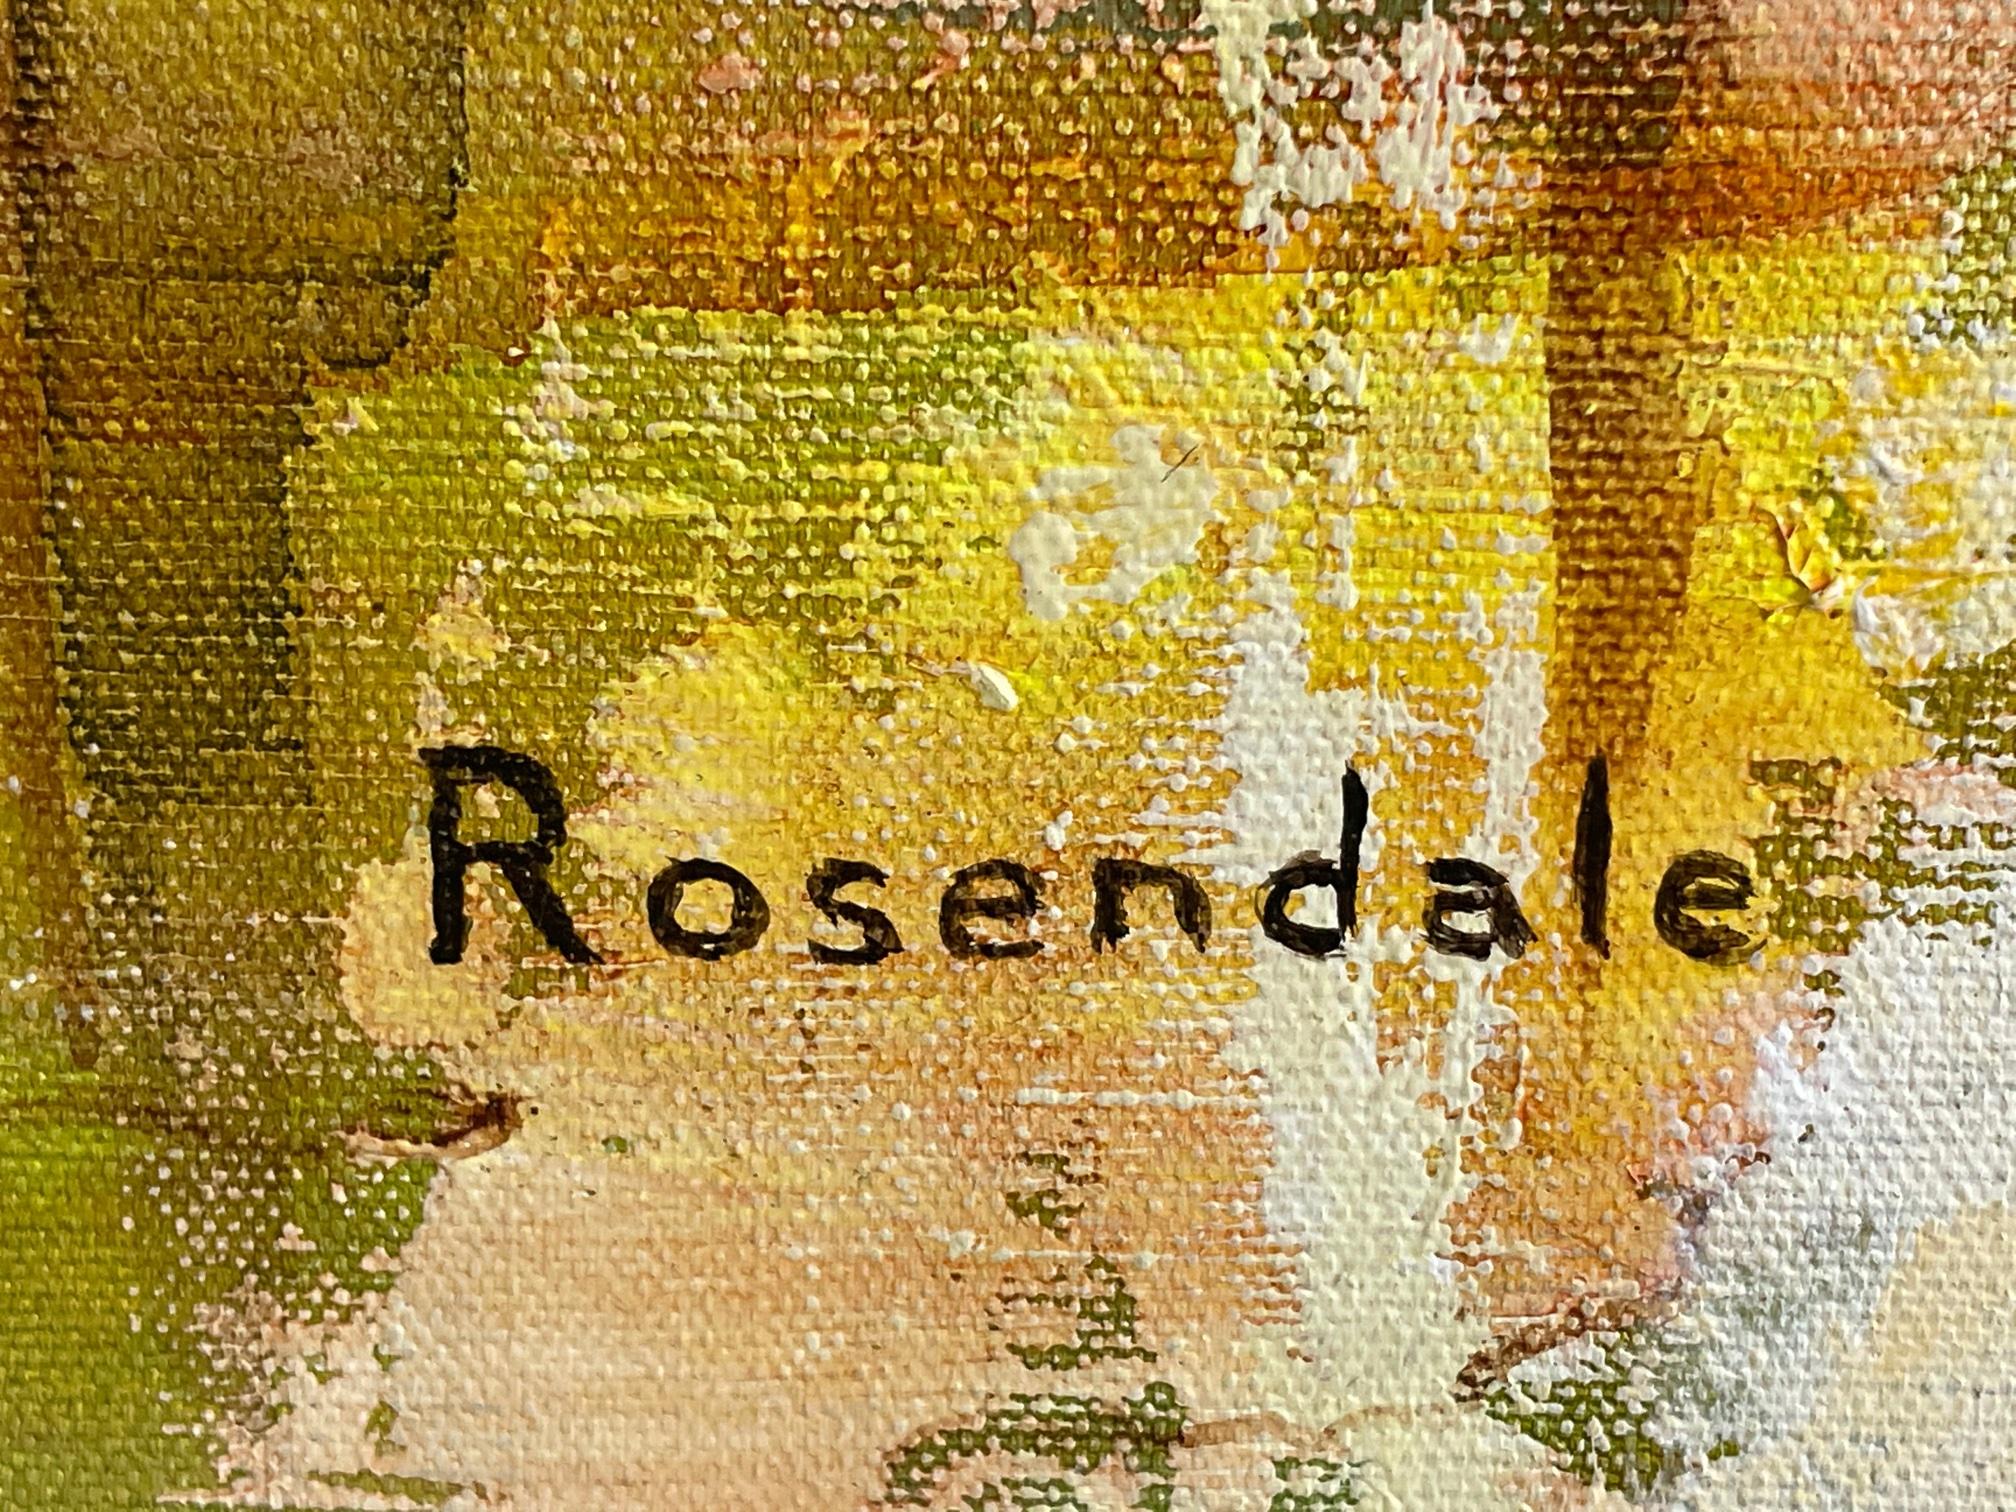 Ein großes Öl auf Leinwand von Harriet Rosendale. Harriet Rosendale war eine bekannte und viel gelistete Künstlerin aus Cconnecticut, die in den 1950er Jahren landesweit für ihre figurativ-impressionistischen Gemälde in Öl und Pastell sowie für ihre